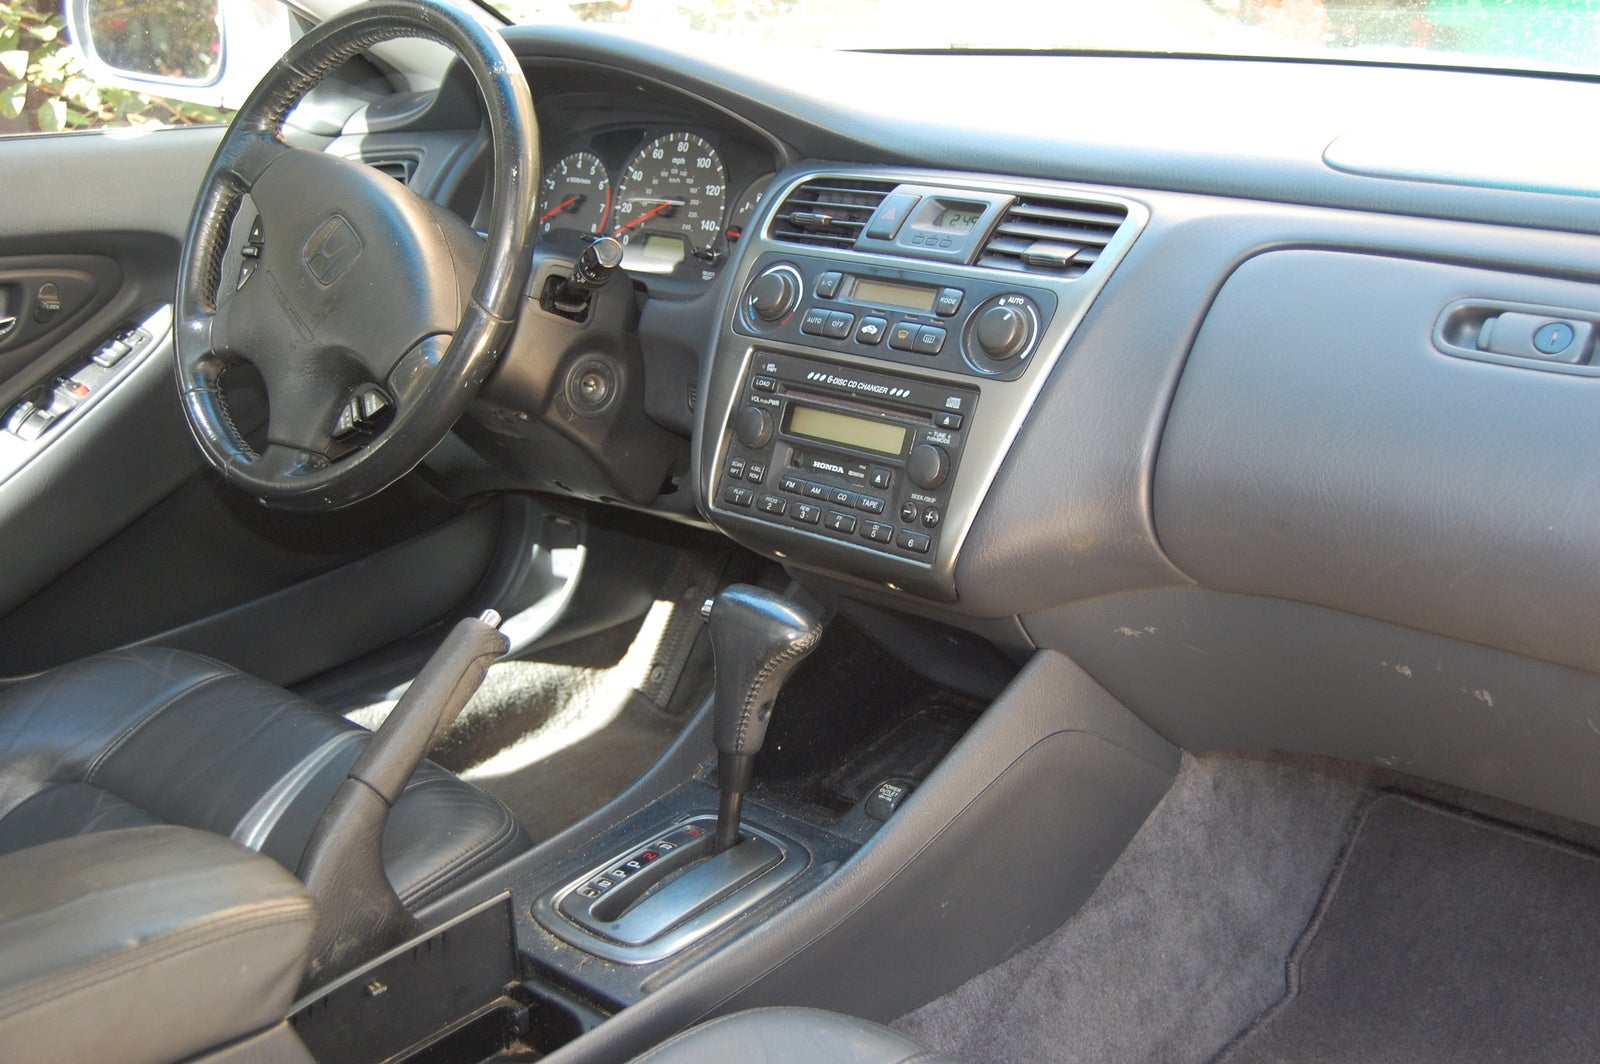 2001 Honda Accord  Interior Pictures  CarGurus